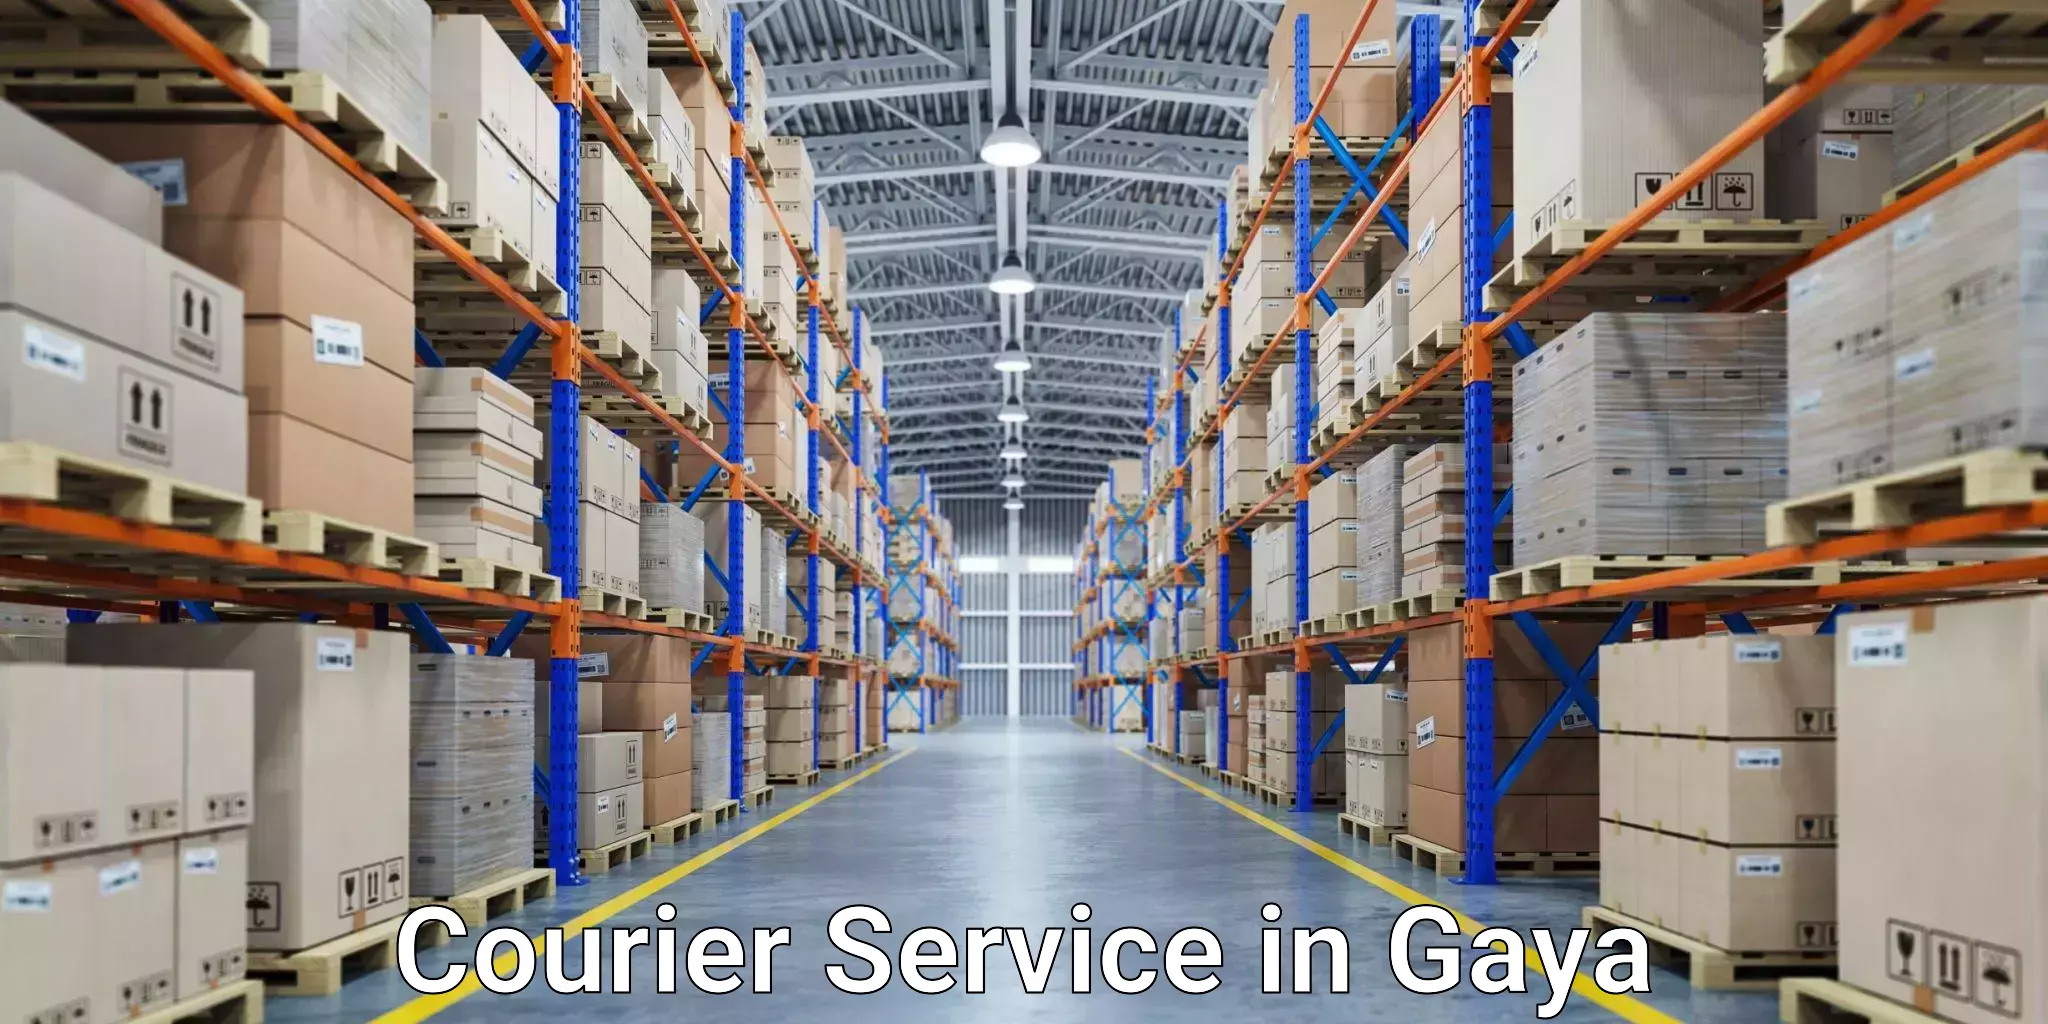 Global logistics network in Gaya